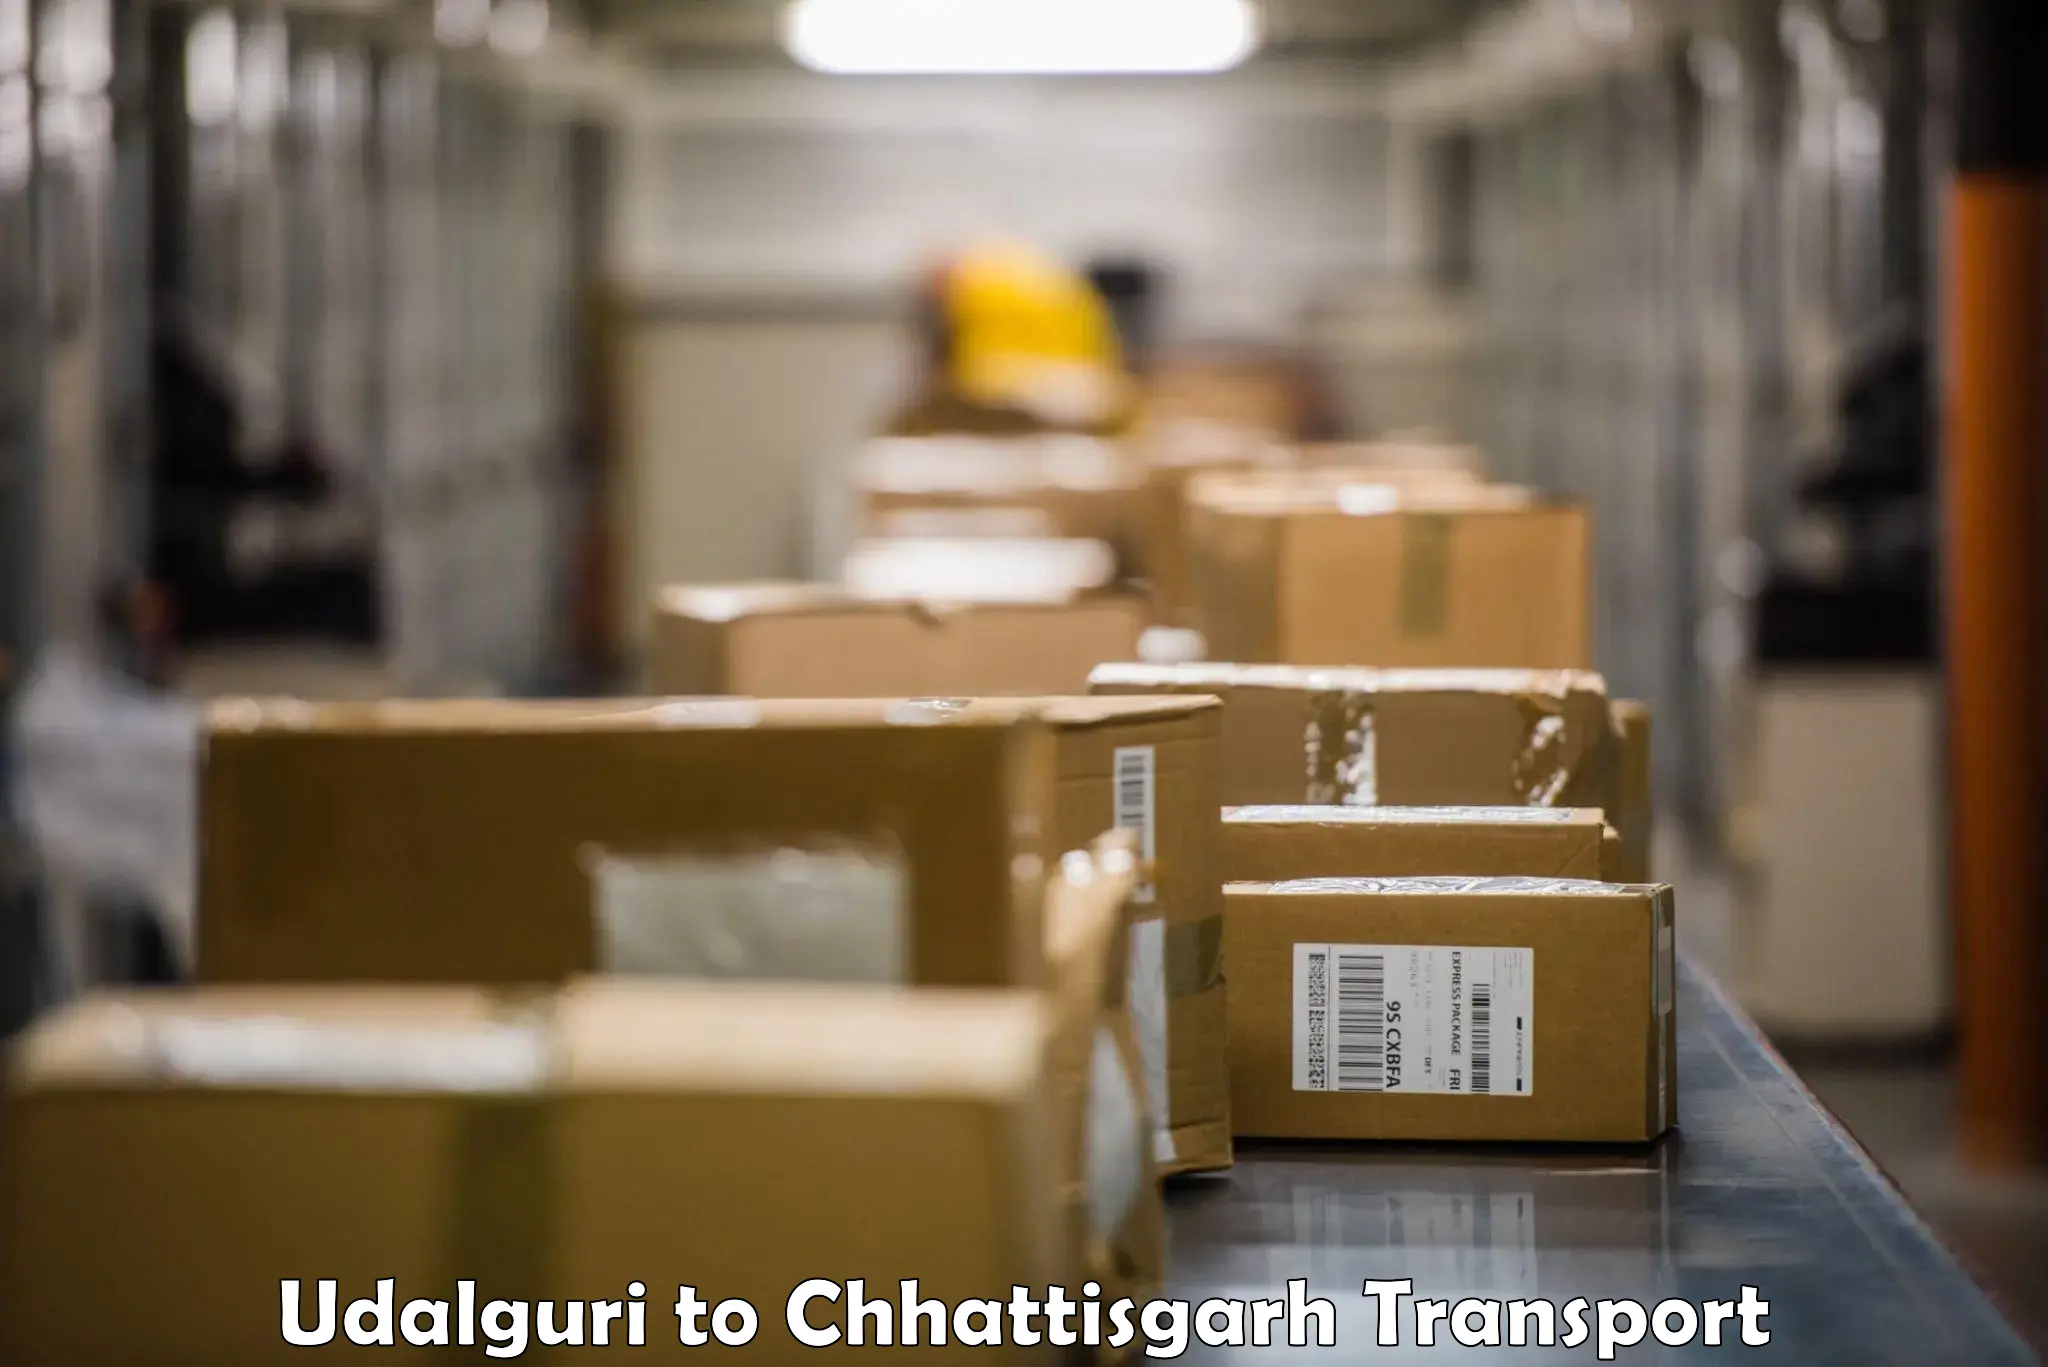 Furniture transport service Udalguri to Pakhanjur